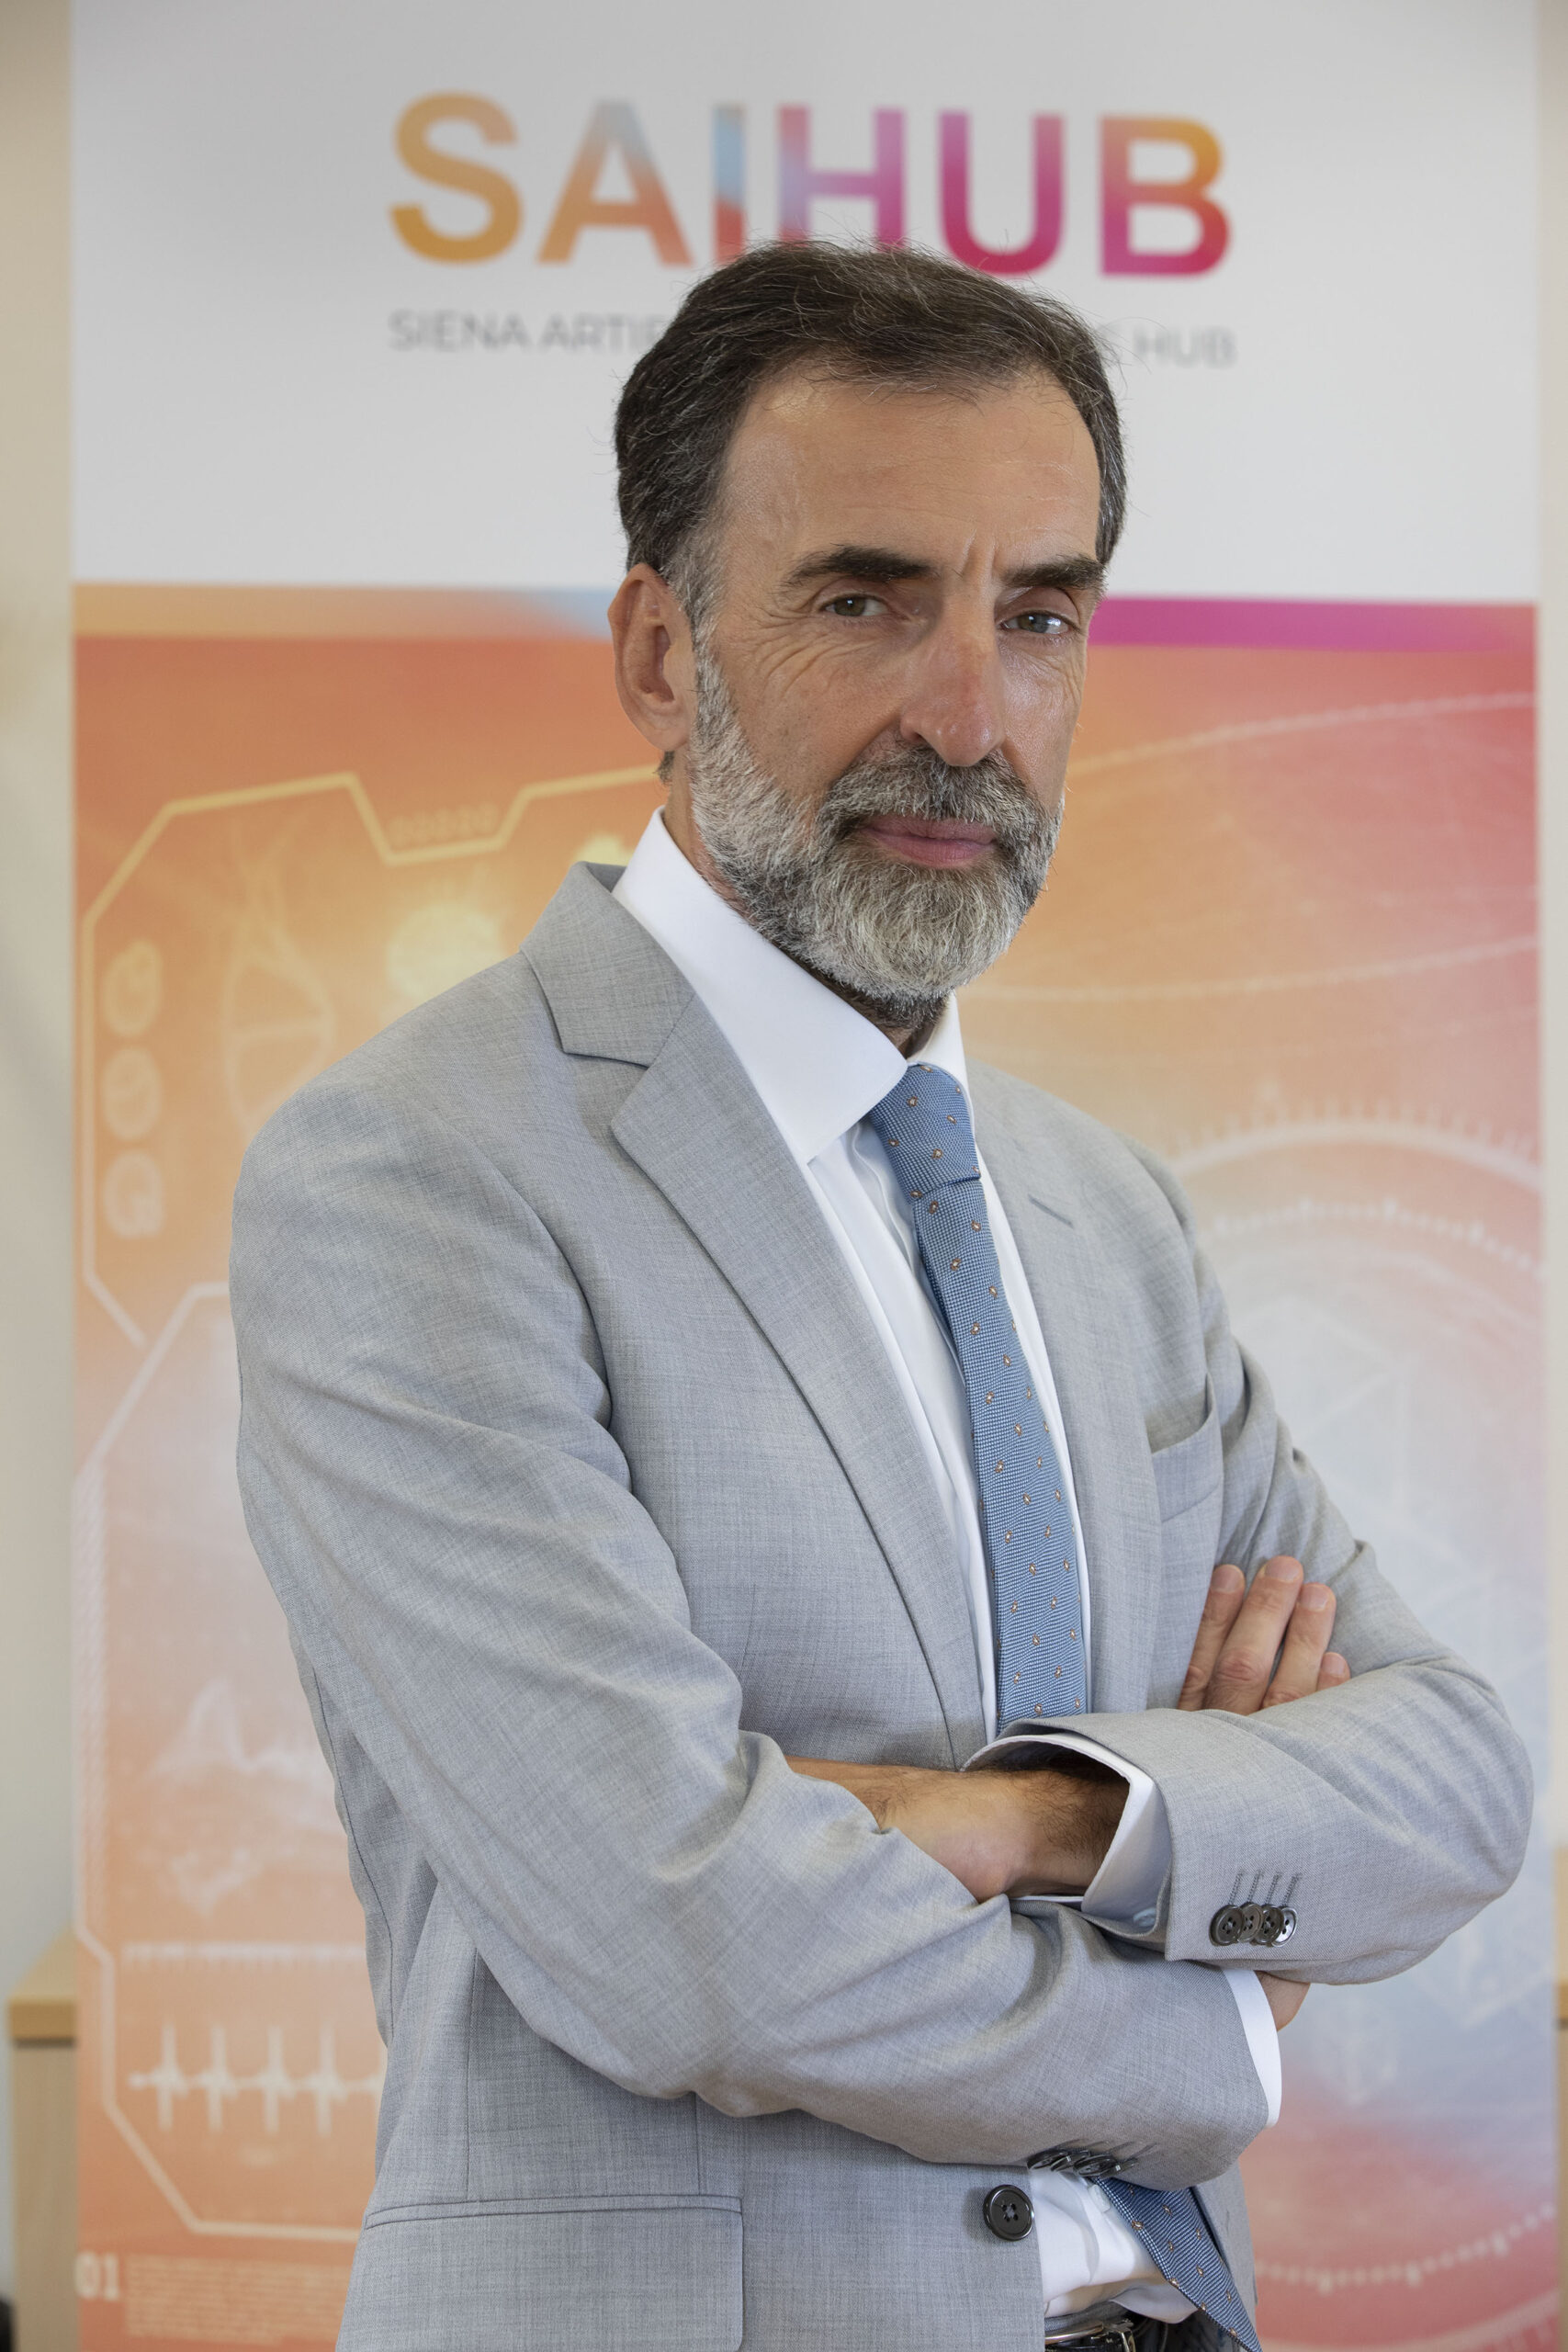 Valter Fraccaro adalah Presiden SAIHub, singkatan dari Siena Artificial Intelligence Hub, pusat kepentingan global di bidang Ilmu Kehidupan